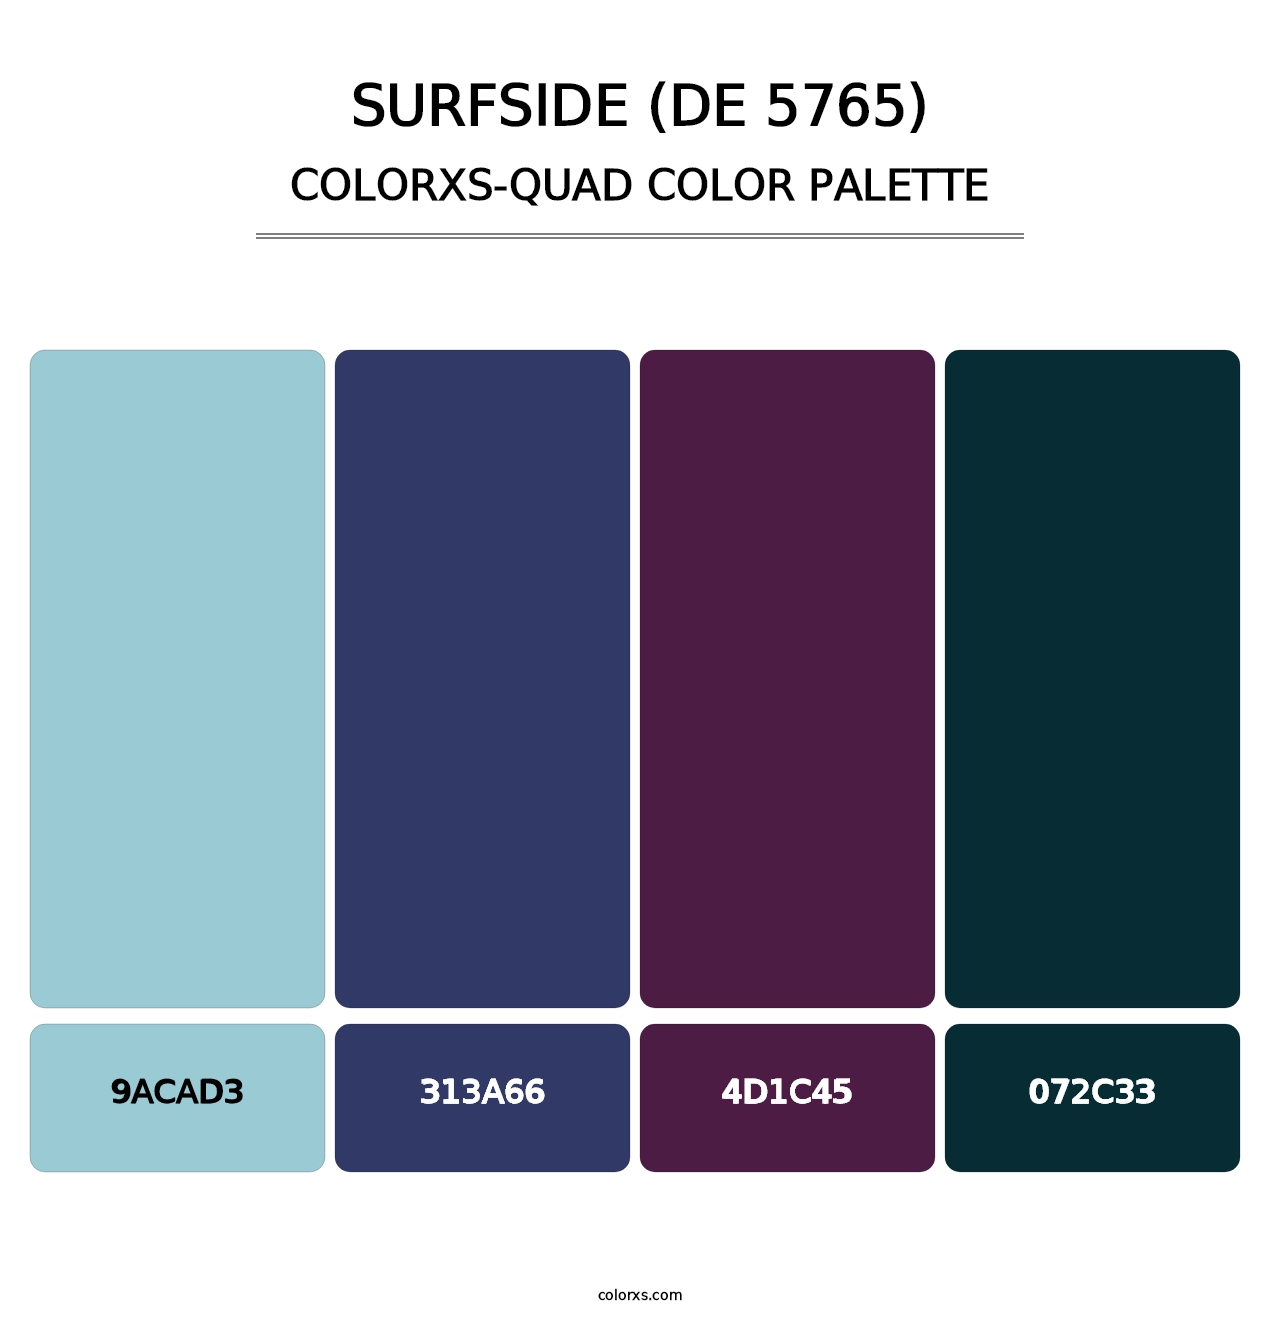 Surfside (DE 5765) - Colorxs Quad Palette